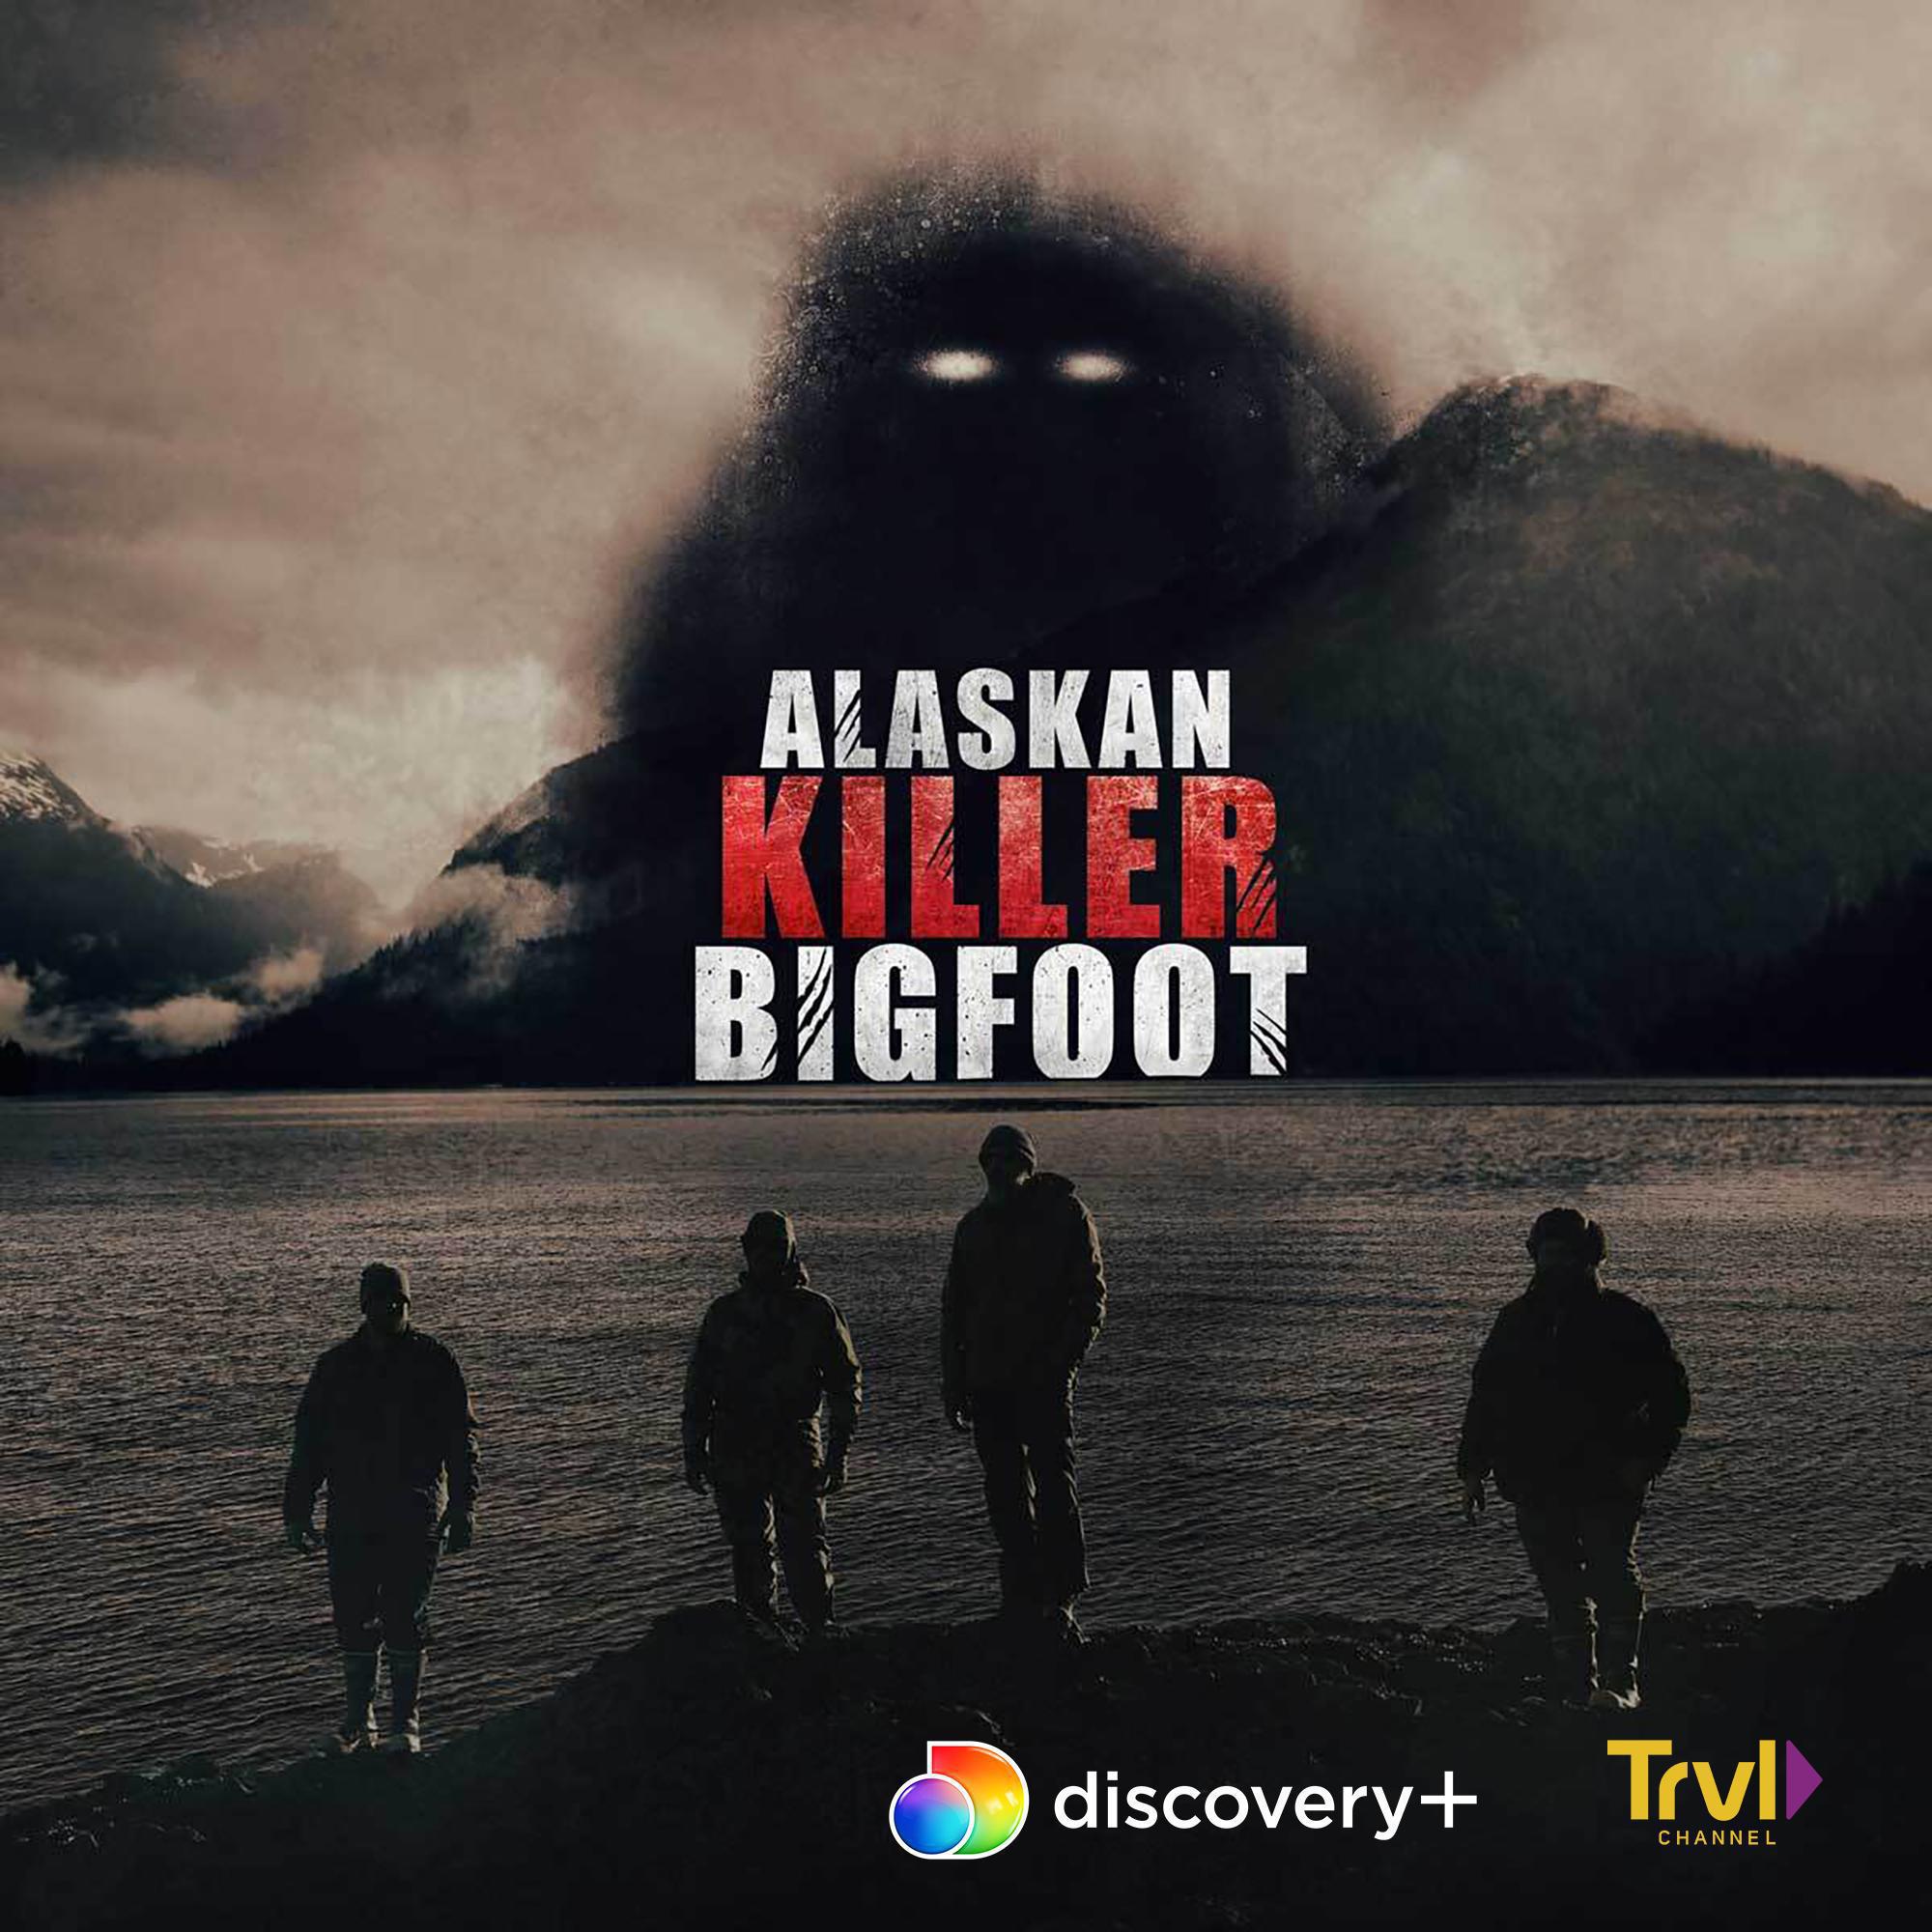 TV ratings for Alaskan Killer Bigfoot in Malaysia. Discovery+ TV series